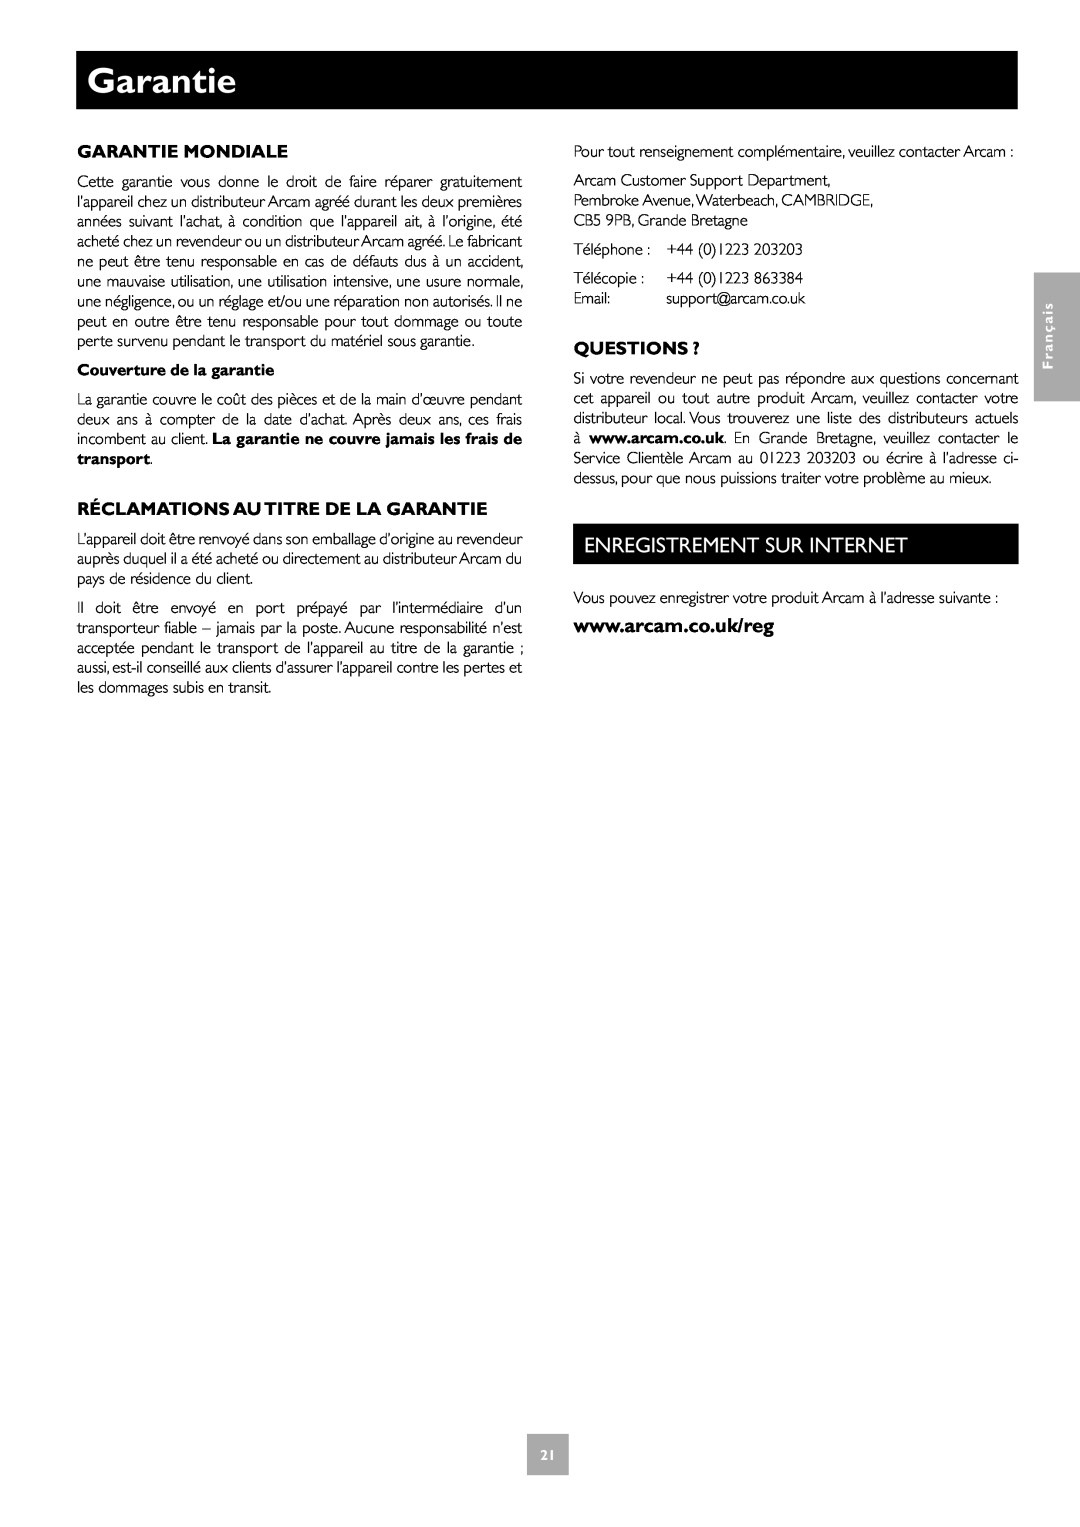 Arcam T31 manual Enregistrement Sur Internet, Garantie Mondiale, Réclamations Au Titre De La Garantie, Questions ? 